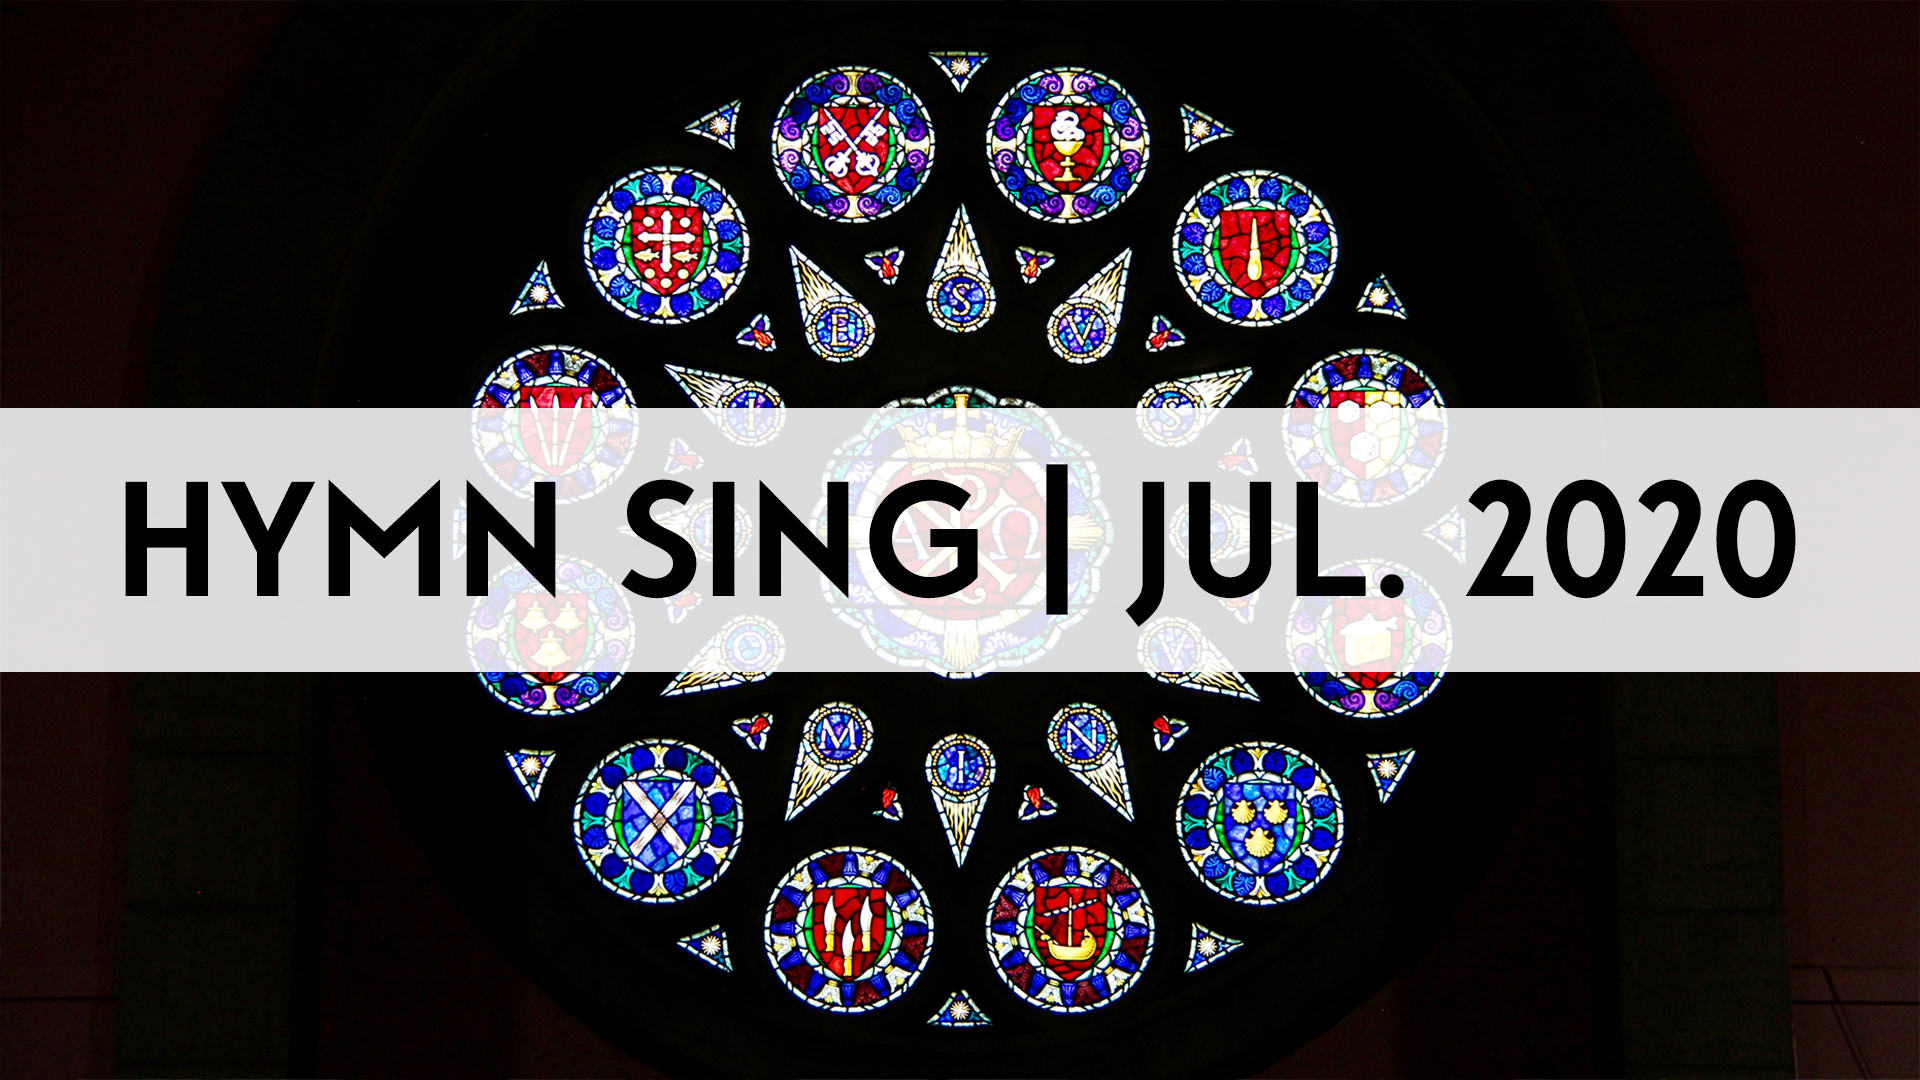 Hymn Sing (July 2020) Image